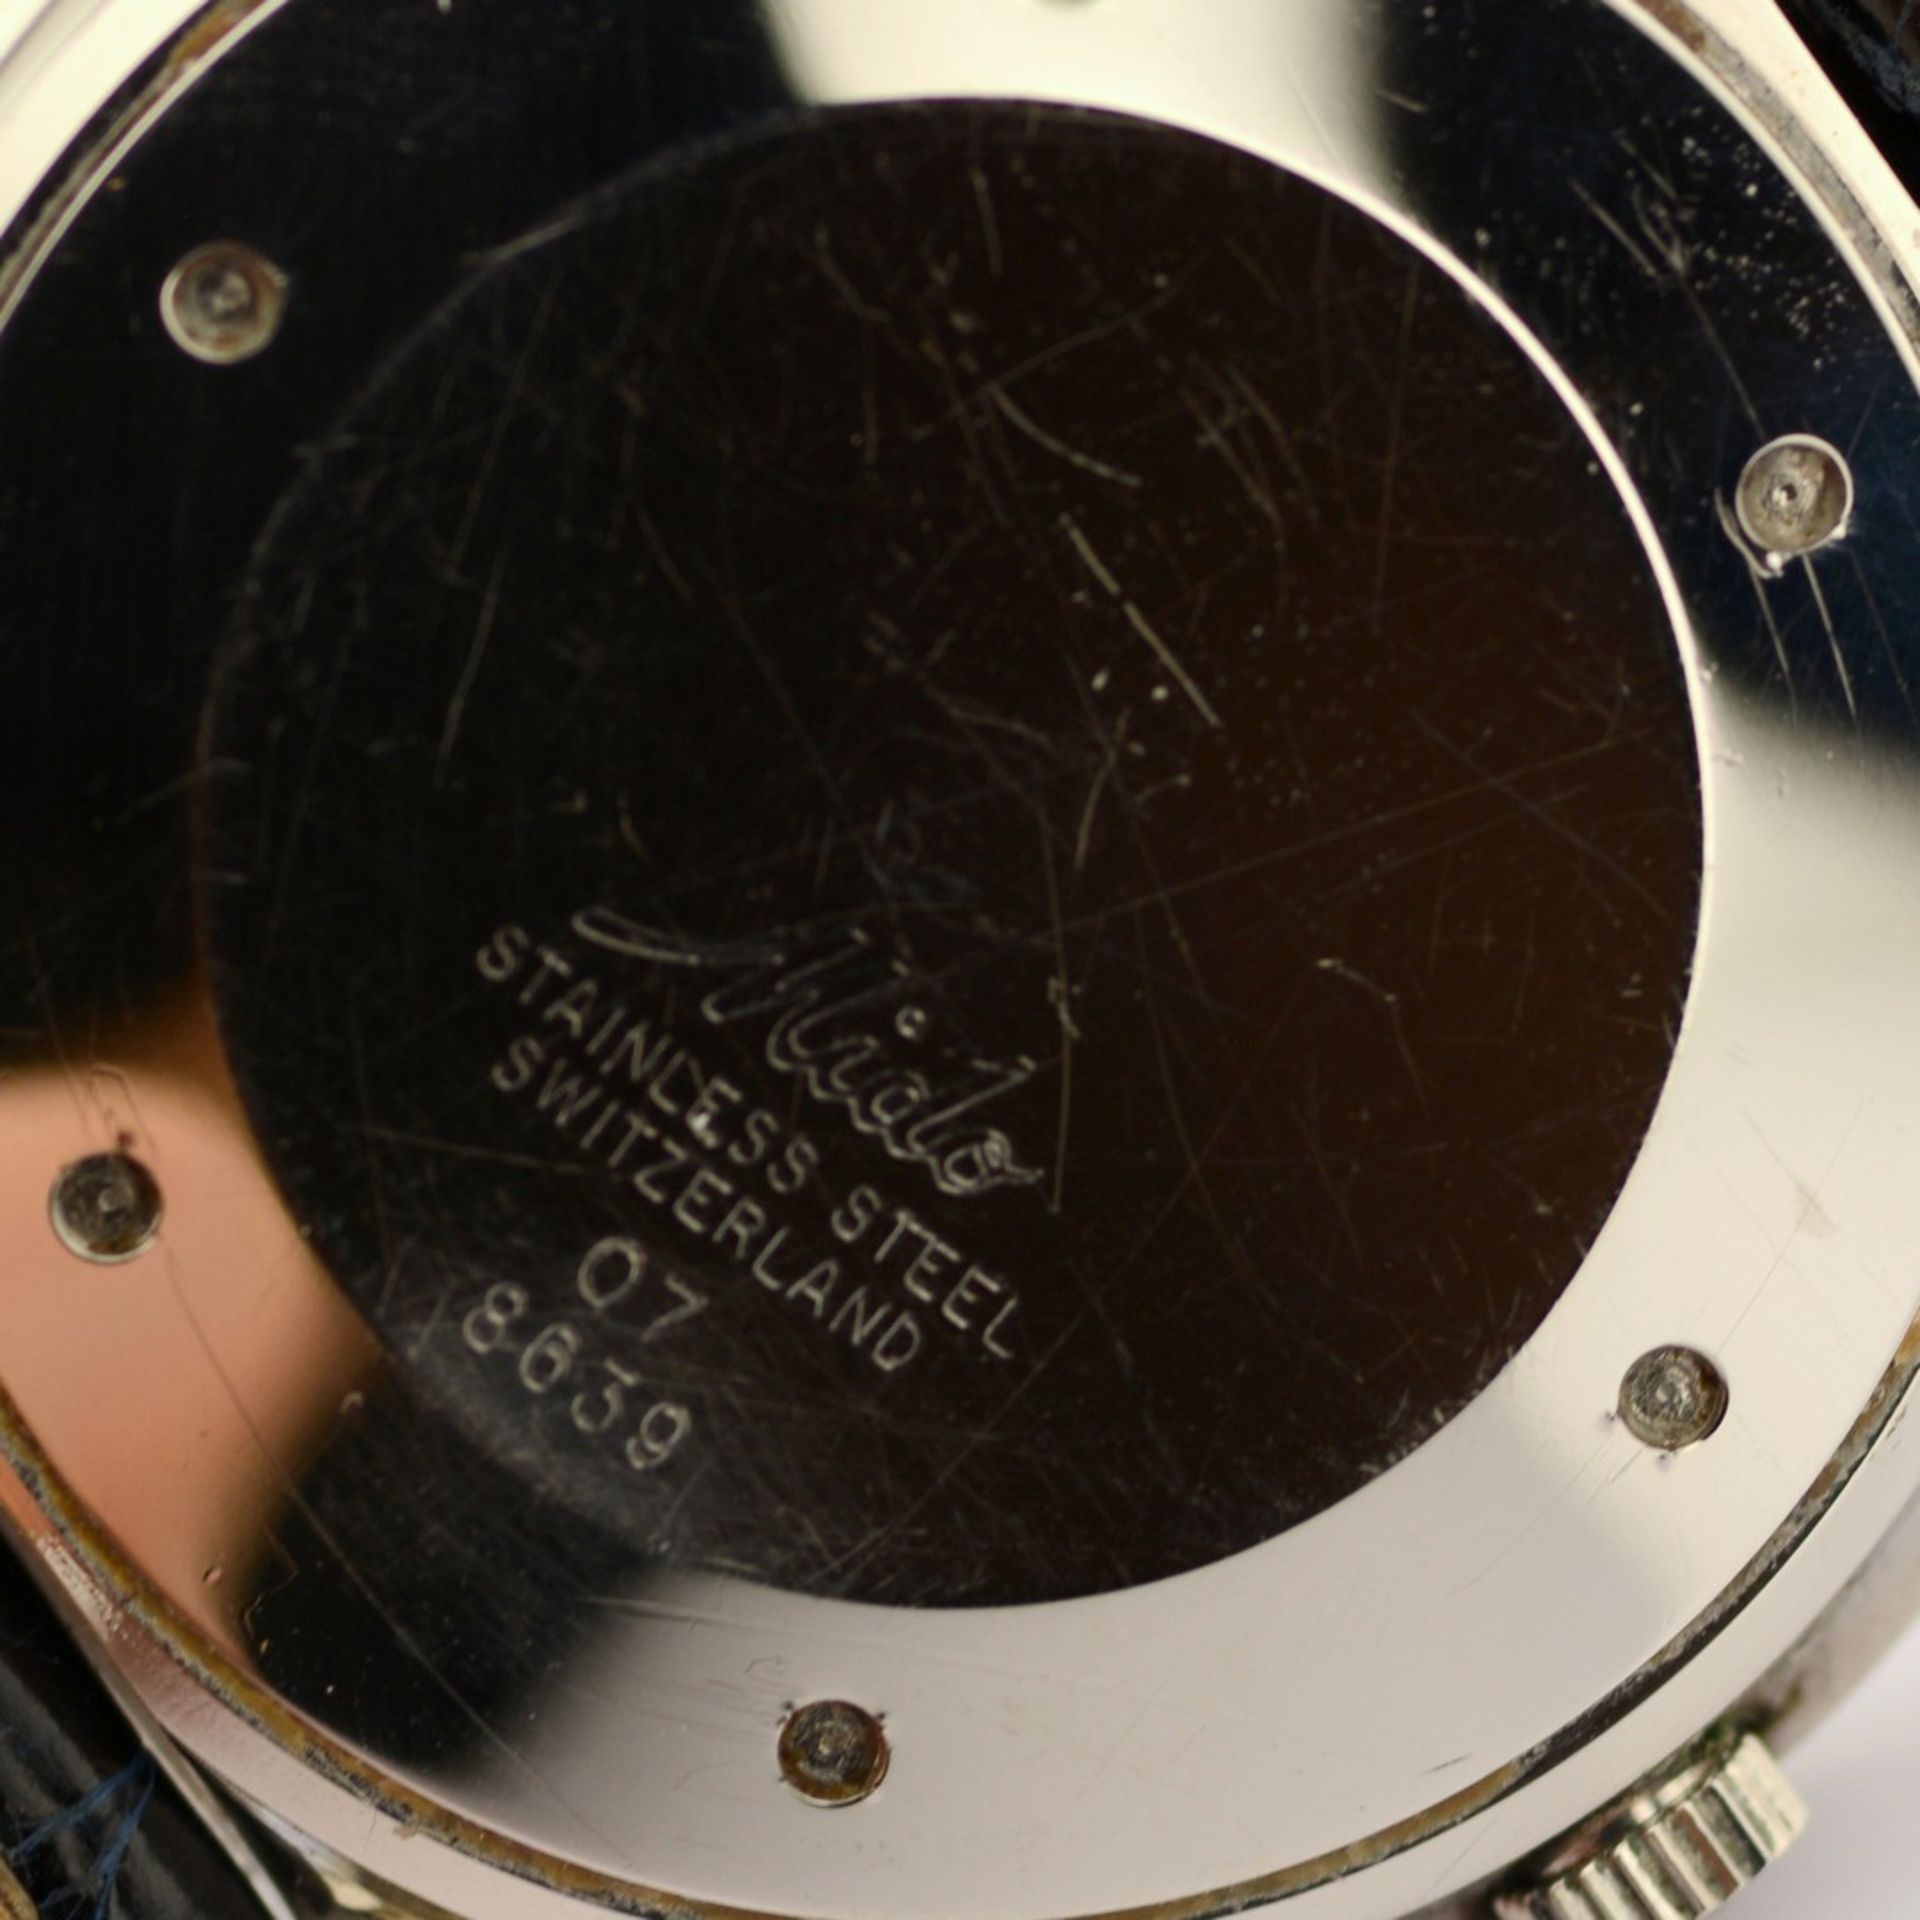 Mido / Ocean Star - Datoday - Day/Date - Gentlemen's Steel Wristwatch - Image 4 of 7